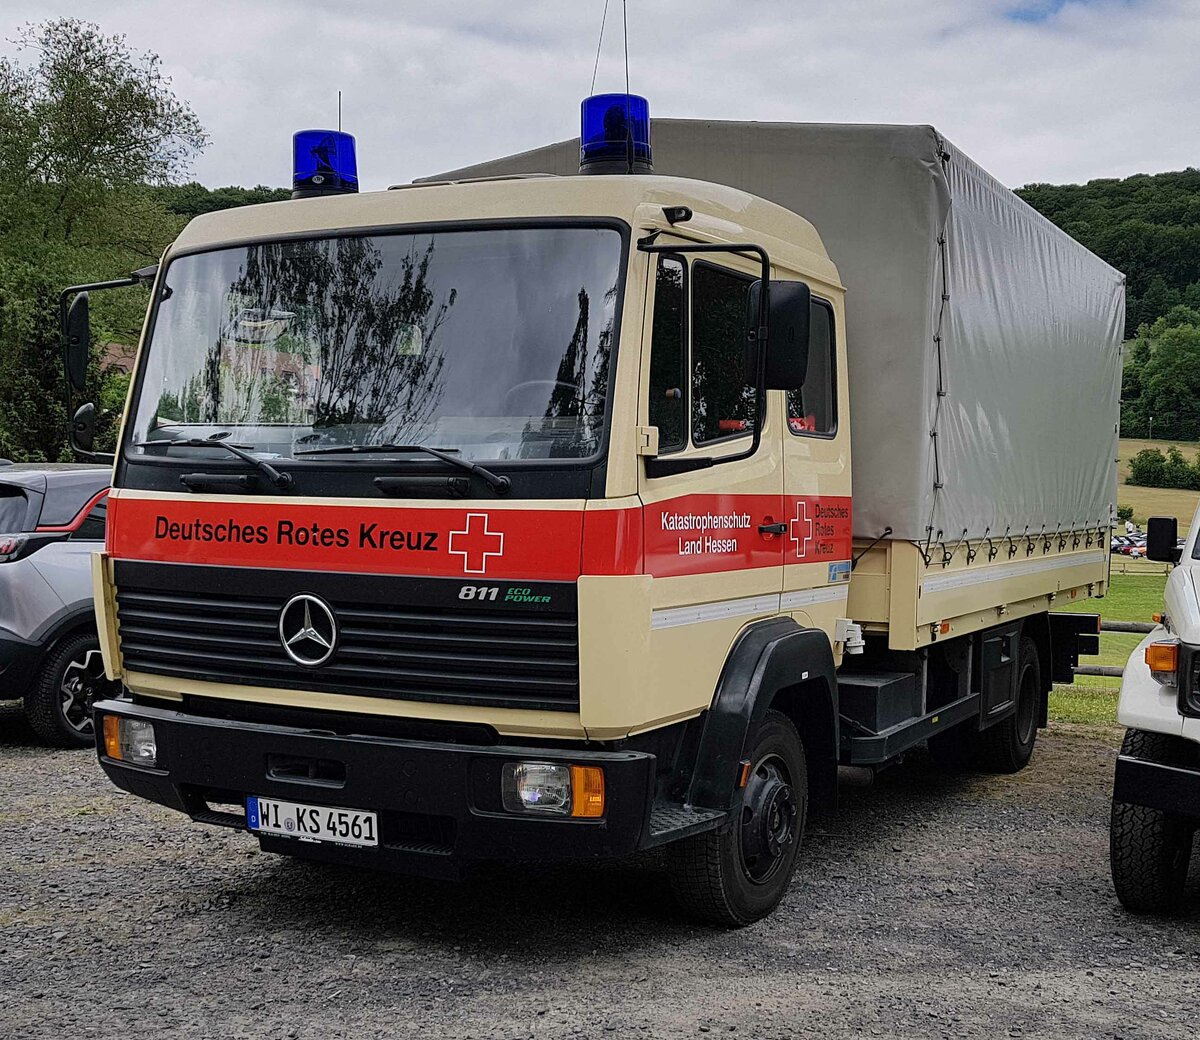 =MB 816 als Einsatzfahrzeug des DRK steht im Juni 2022 in Hohenroda anl. des Scirocco-Treffens